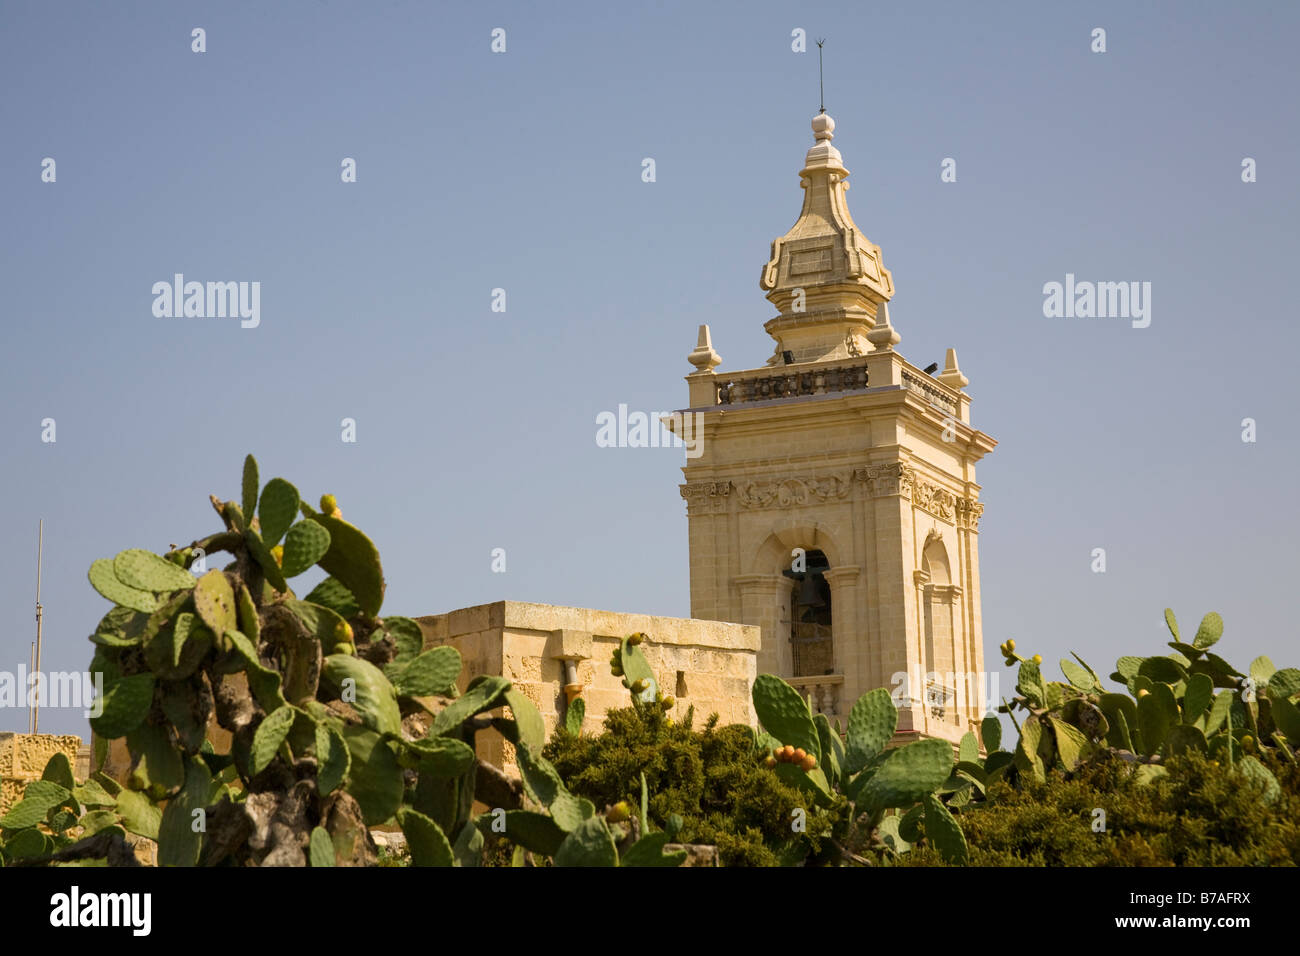 Clocher de la Cathédrale de Gozo, Pjazza Katidral, Place de la Cathédrale, Victoria, Gozo, Malte Banque D'Images